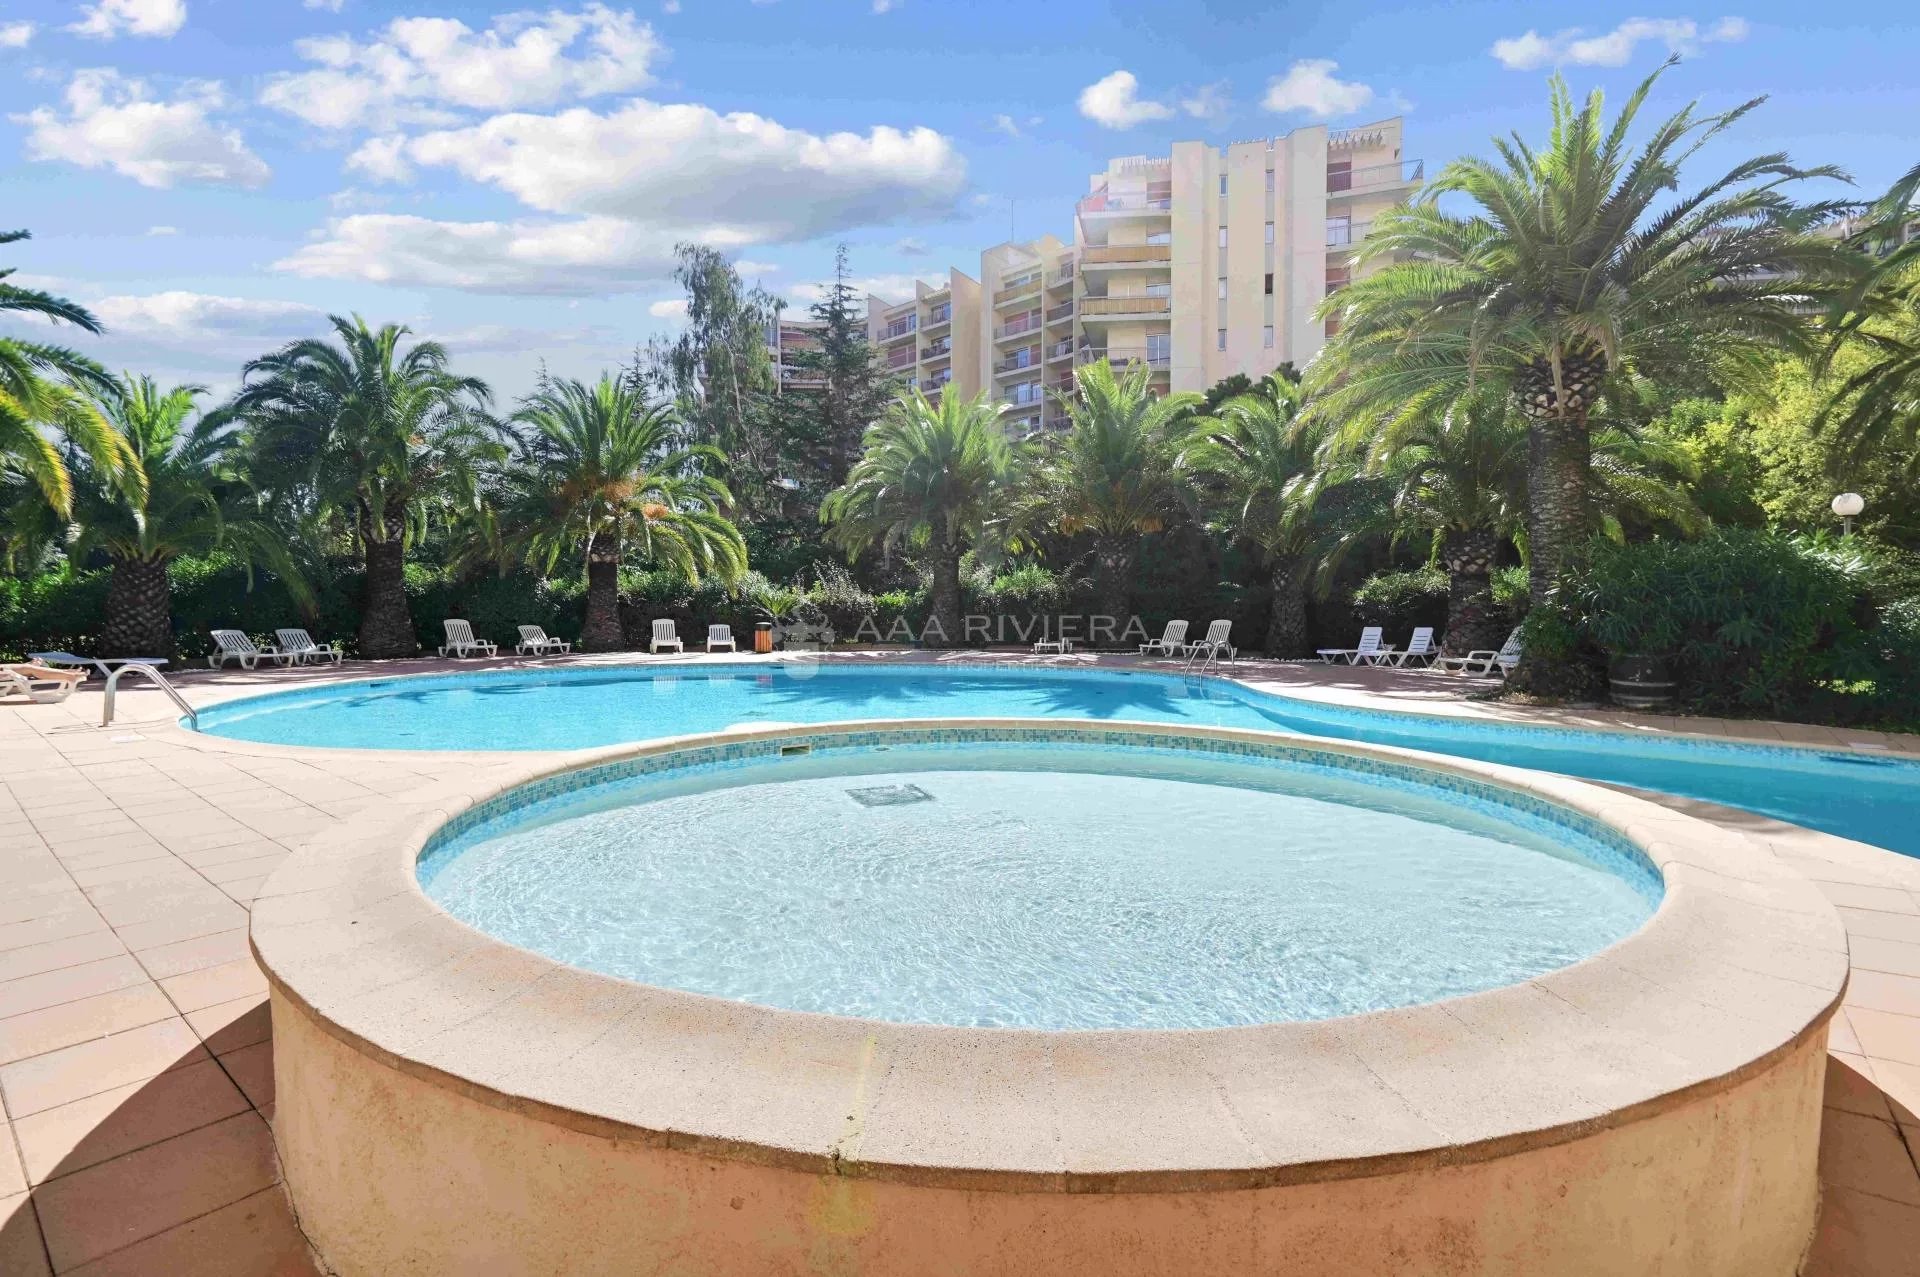 VENDU - Exclusivité - Mandelieu Cannes Marina - Beau 3 pièces avec terrasse de 21m² et garage dans résidence de standing avec gardien, piscine et tennis